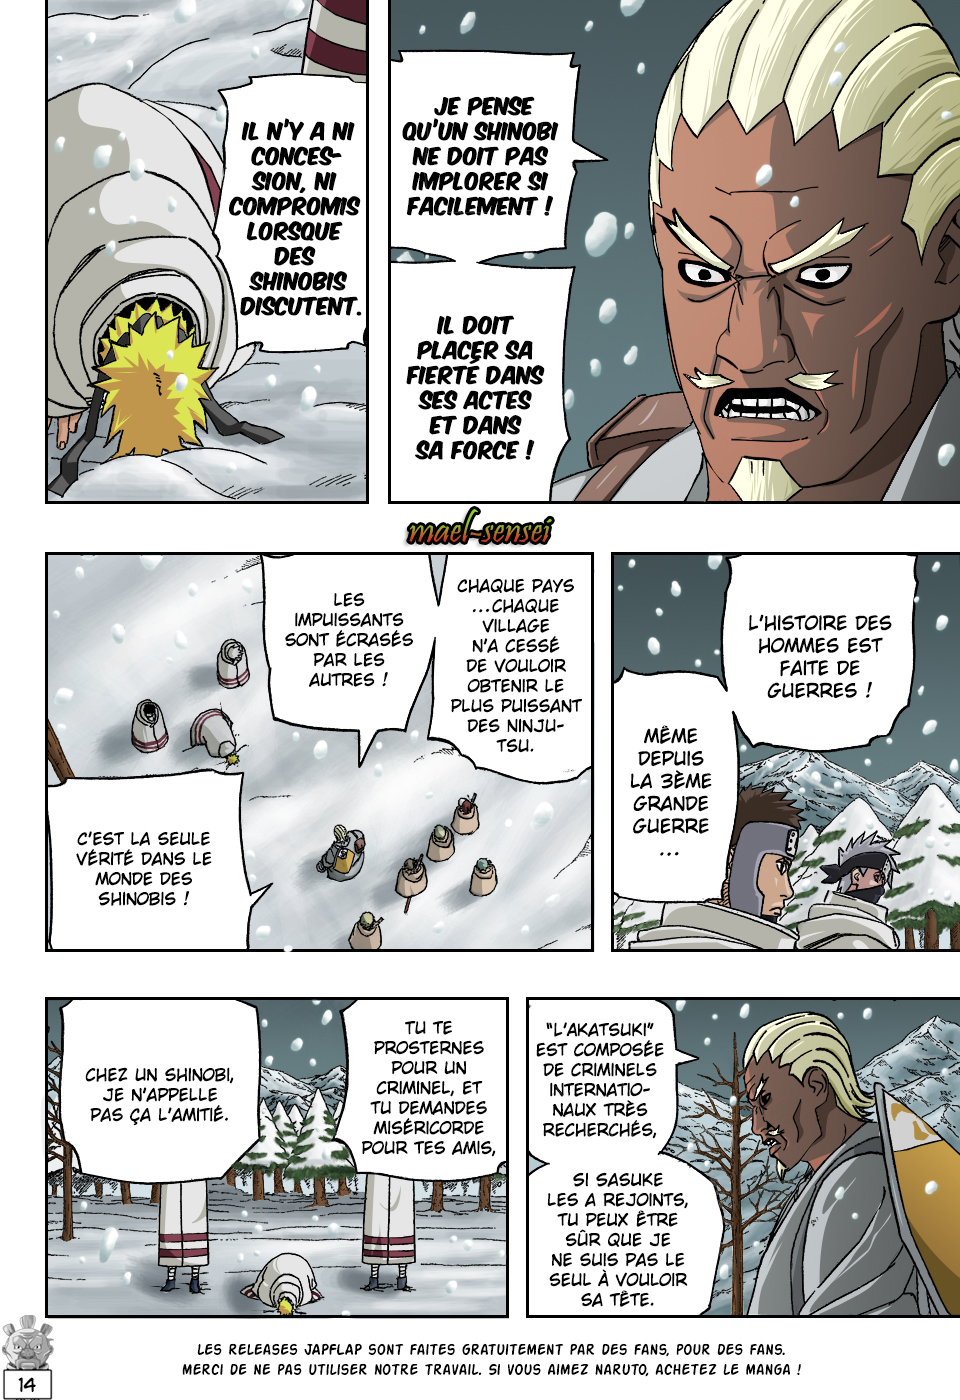 Naruto chapitre 457 colorisé - Page 13